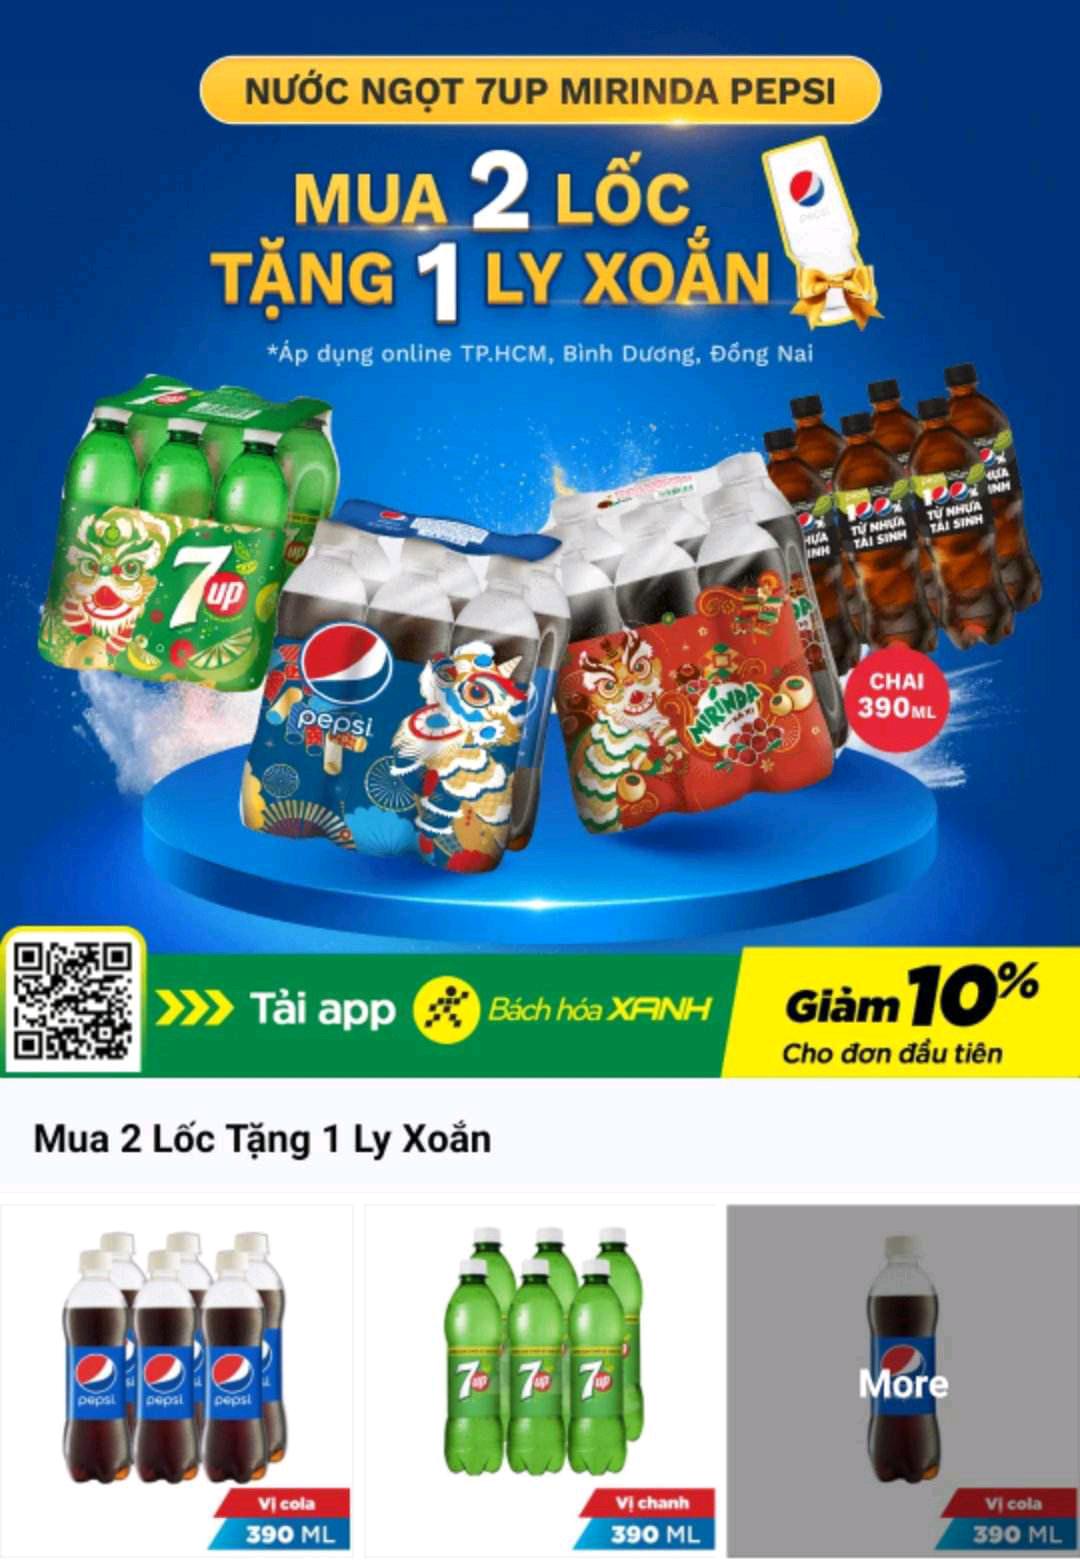 Bắch Hoà Xanh Saigon Grocery store nearby TPHCM🔥Nước Ngọt 7Up, Mirinda, Pepsi
🎁Mua 2 Thùng Tặng Ngay 1 Thùng Đá
🎁Mua 2 Lốc Tặng Ngay 1 Ly Xoắn
*Áp dụng tùy sản